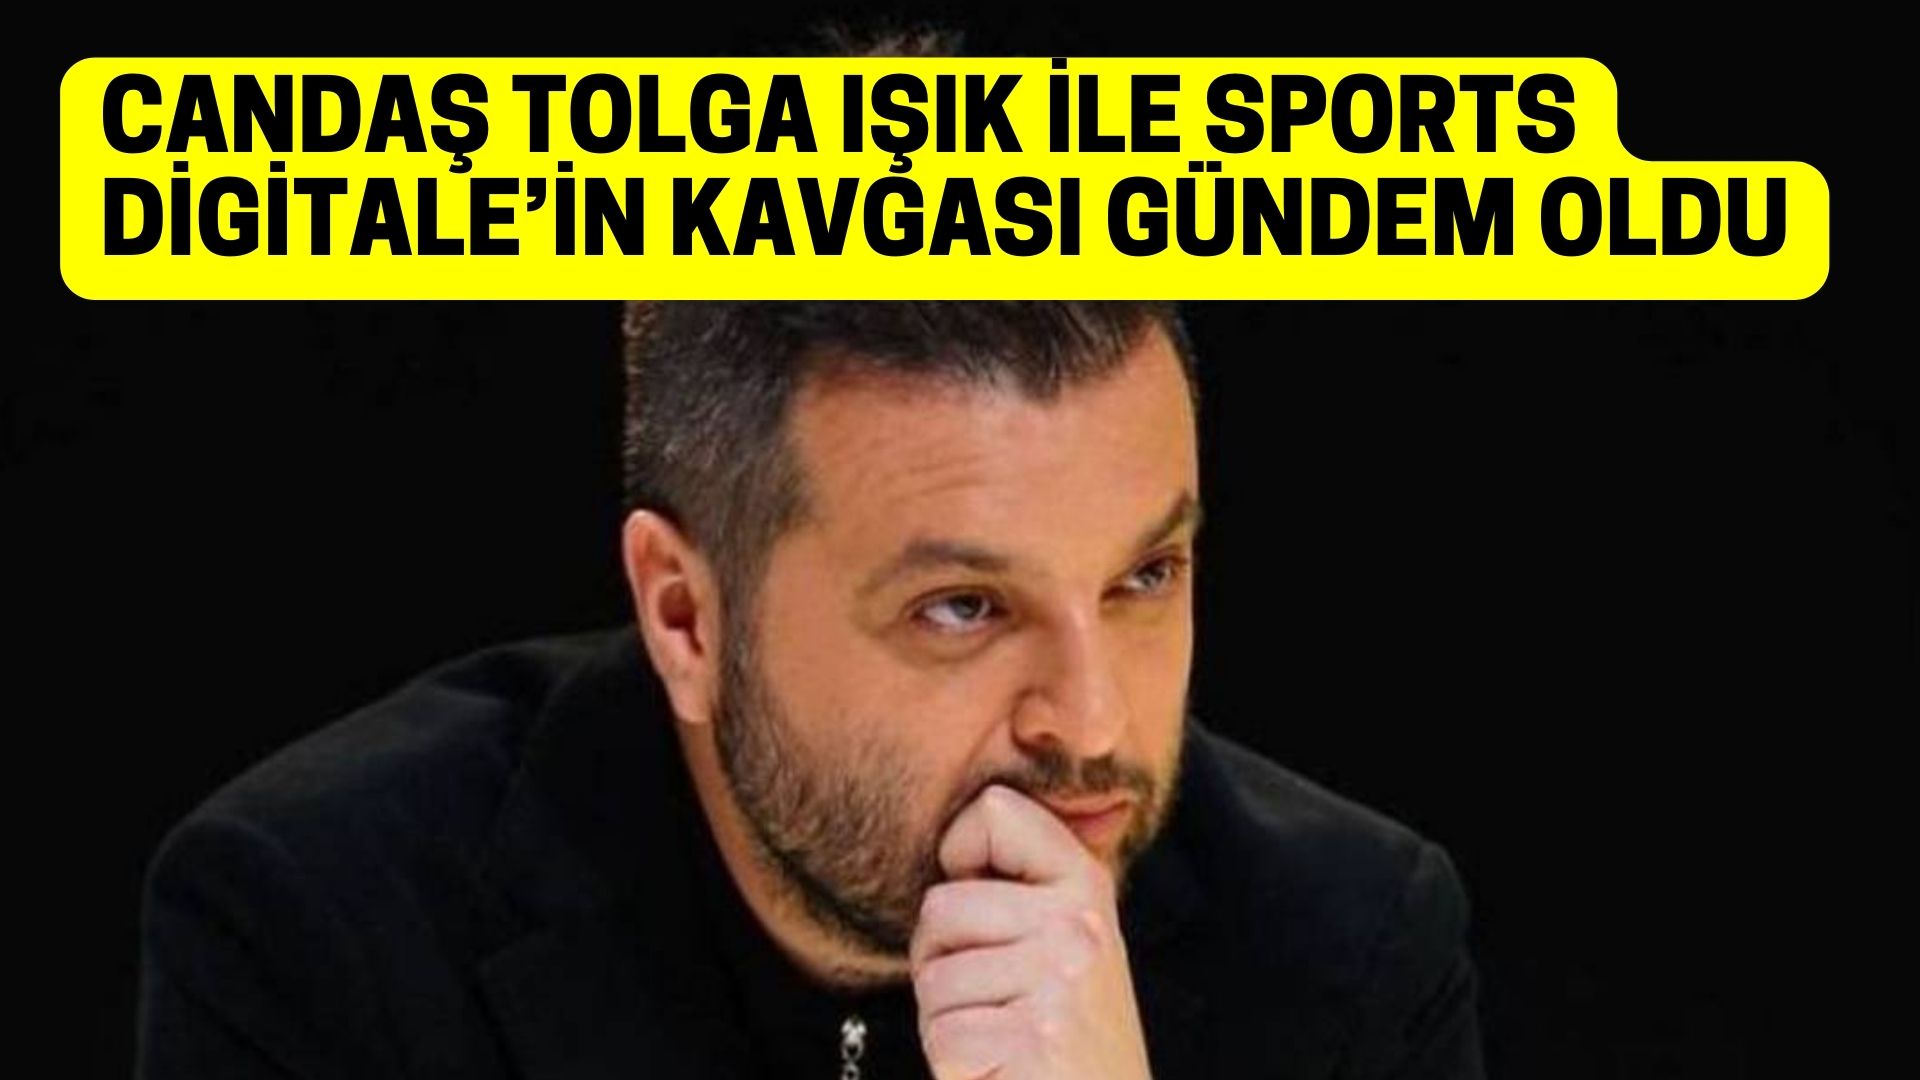 Candaş Tolga Işık'tan Sports Digitale olay sözler! Galatasaray camiasının tepkisi büyüyor!